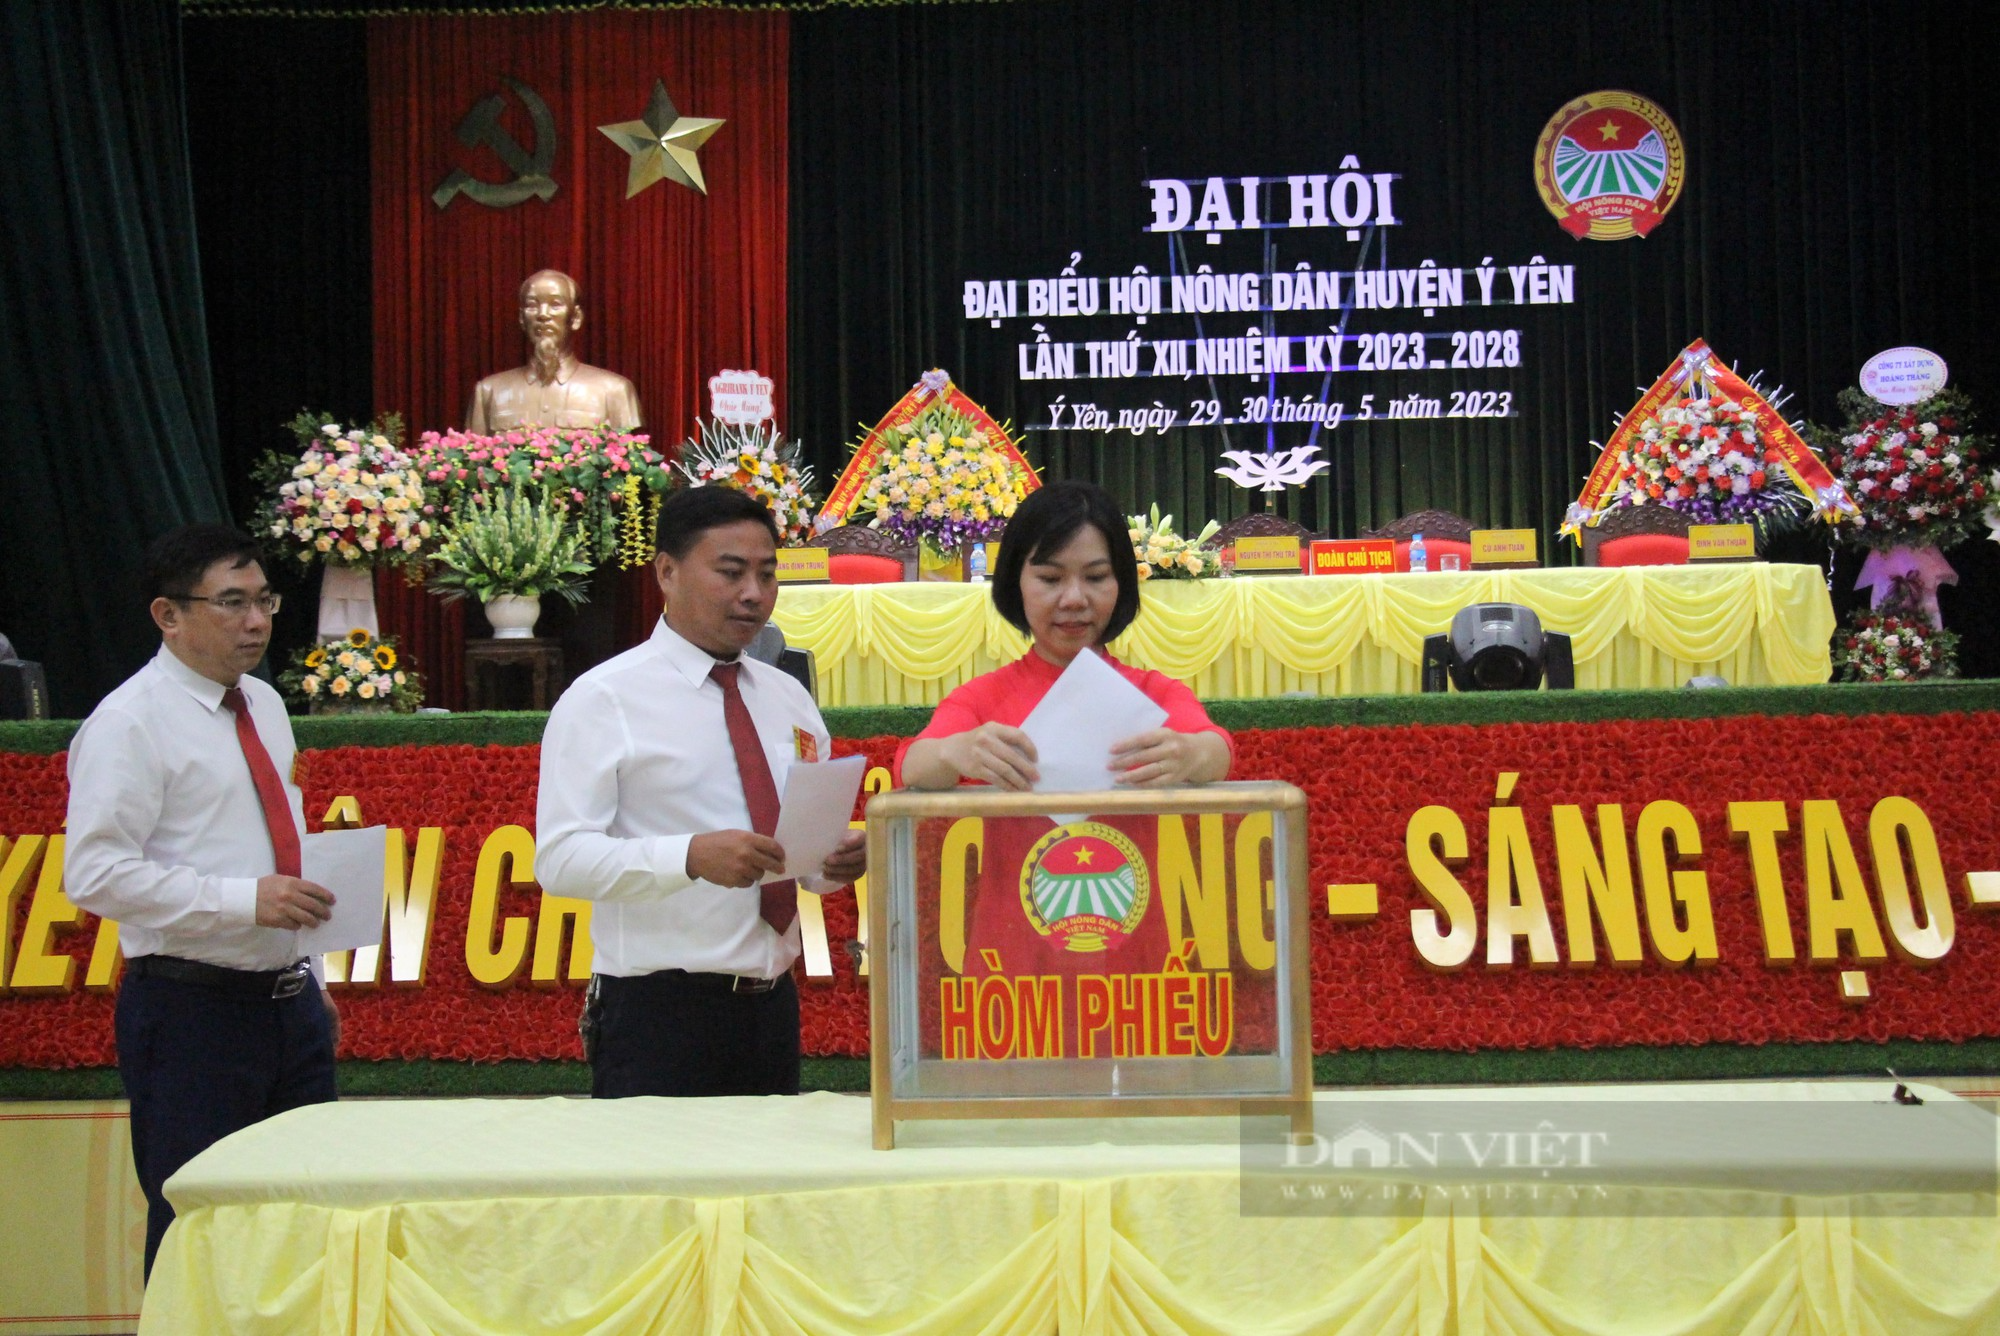 Nam Định: Bà Nguyễn Thị Thu Trà tái đắc cử chức Chủ tịch Hội Nông dân huyện Ý Yên, nhiệm kỳ 2023 - 2028 - Ảnh 2.